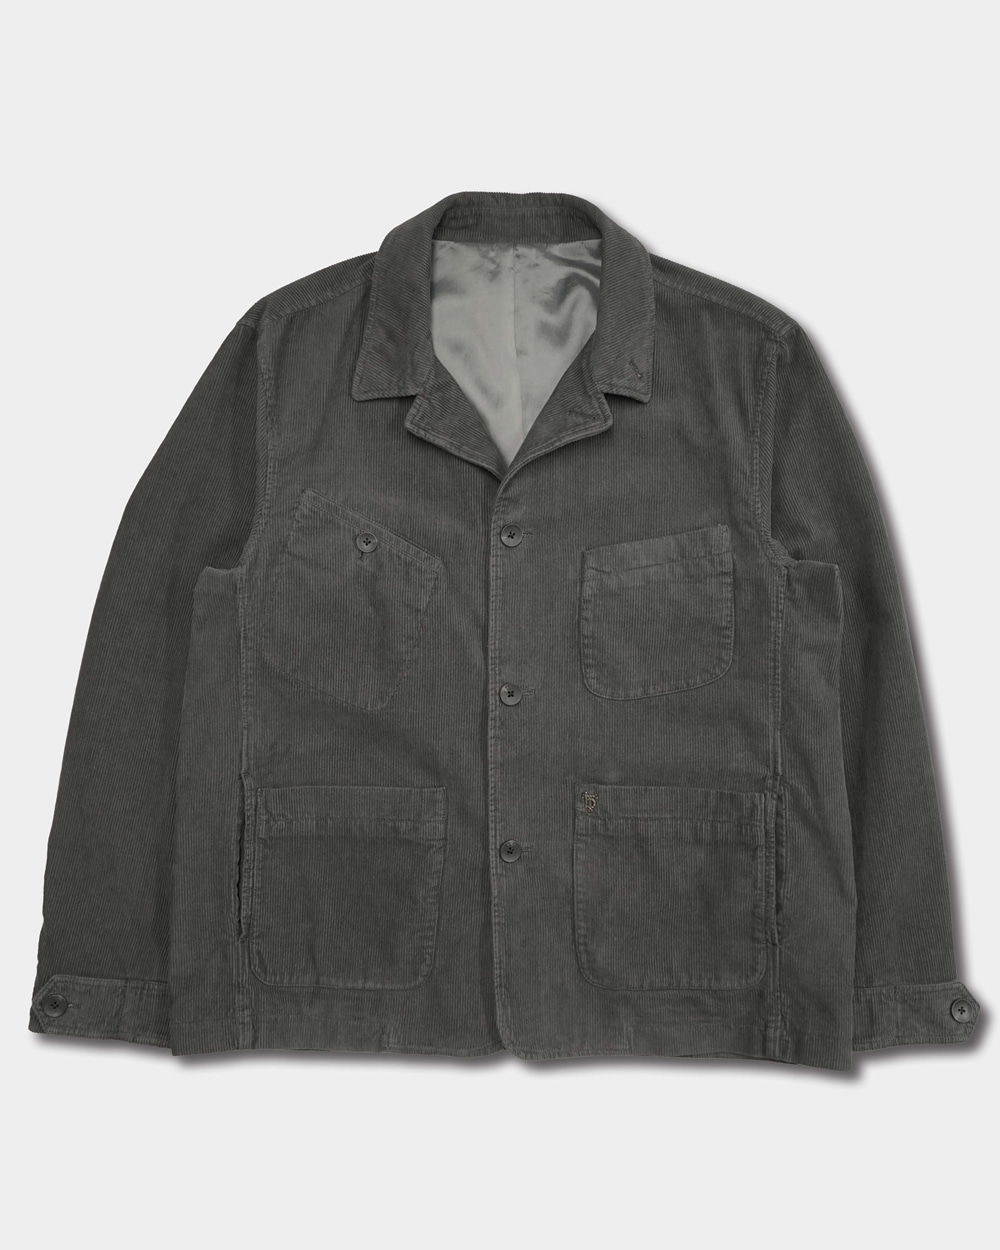 Corduroy unbalance pocket jacket - Charcoalbirbante(비르반테)